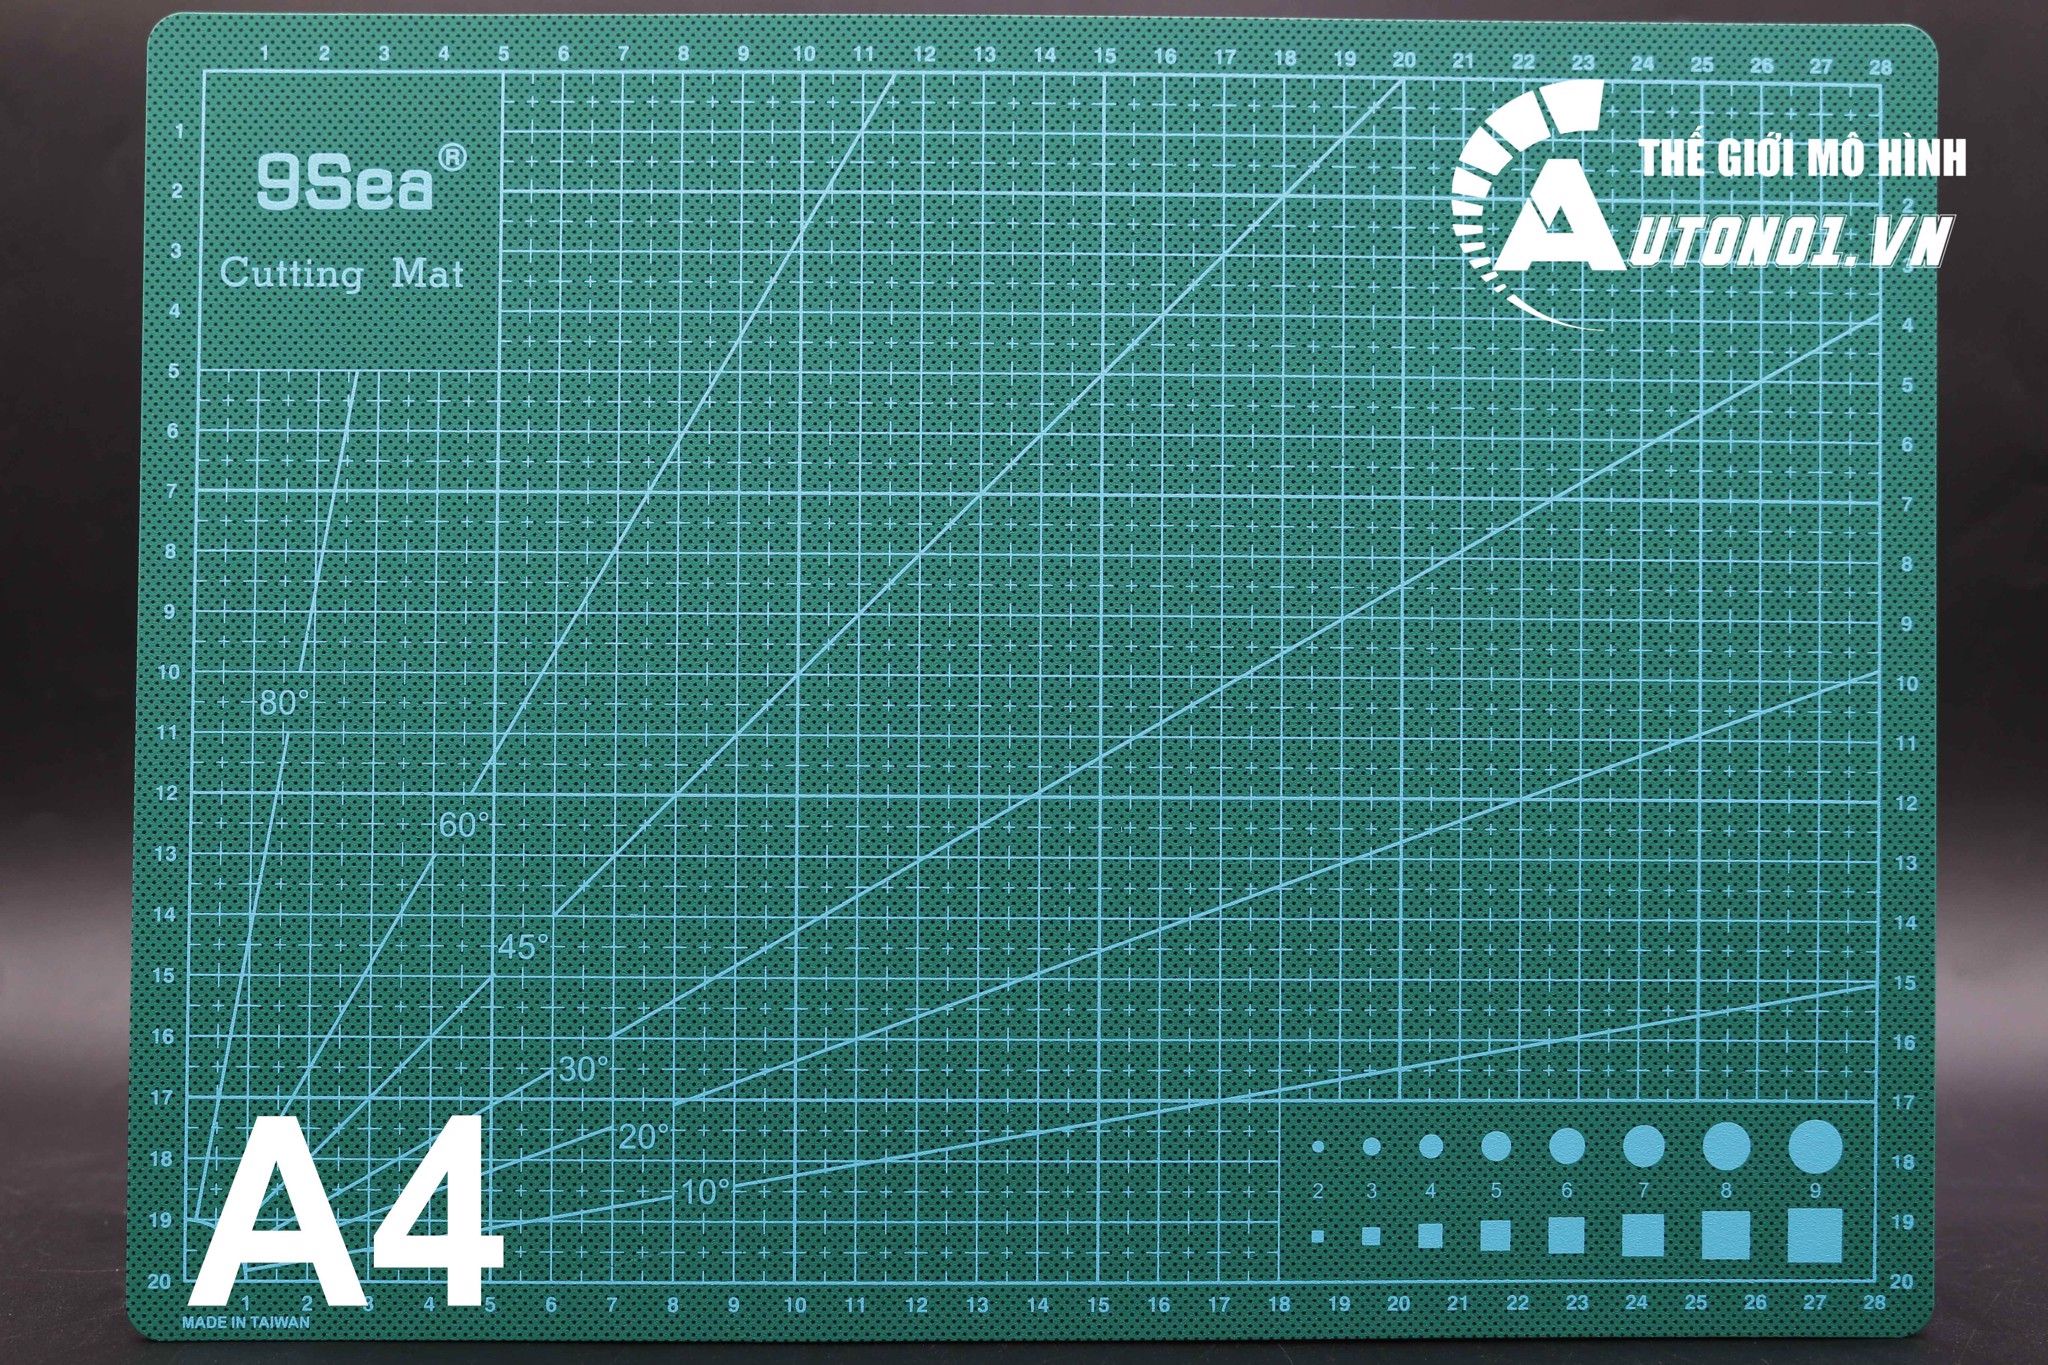  Bảng lót cắt 5 lớp cutting mat A4 A3 A2 cao su tự liền màu xanh PK346 